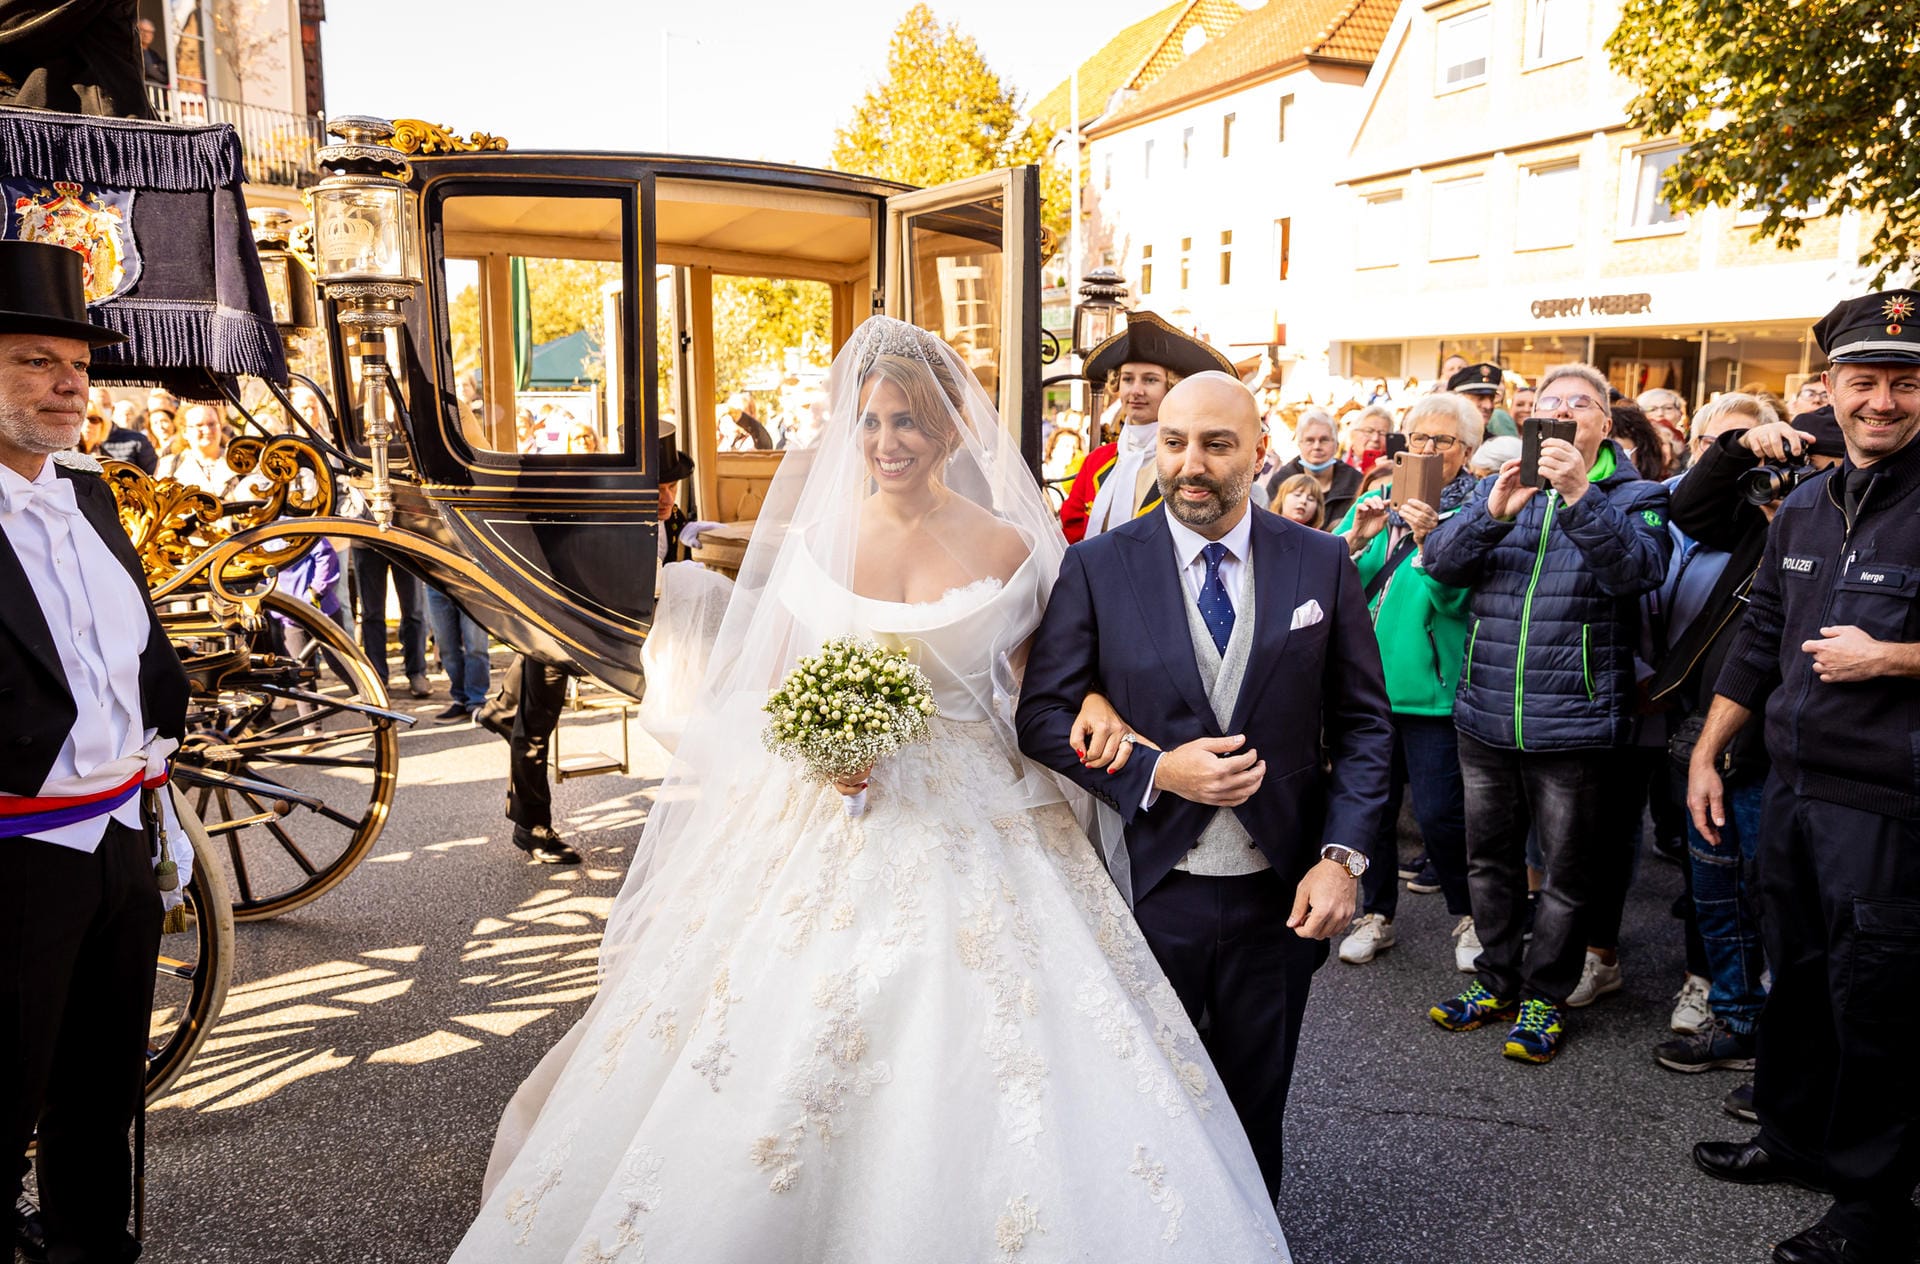 Fürstin Mahkameh zu Schaumburg-Lippe wird zur kirchlichen Hochzeit geführt.